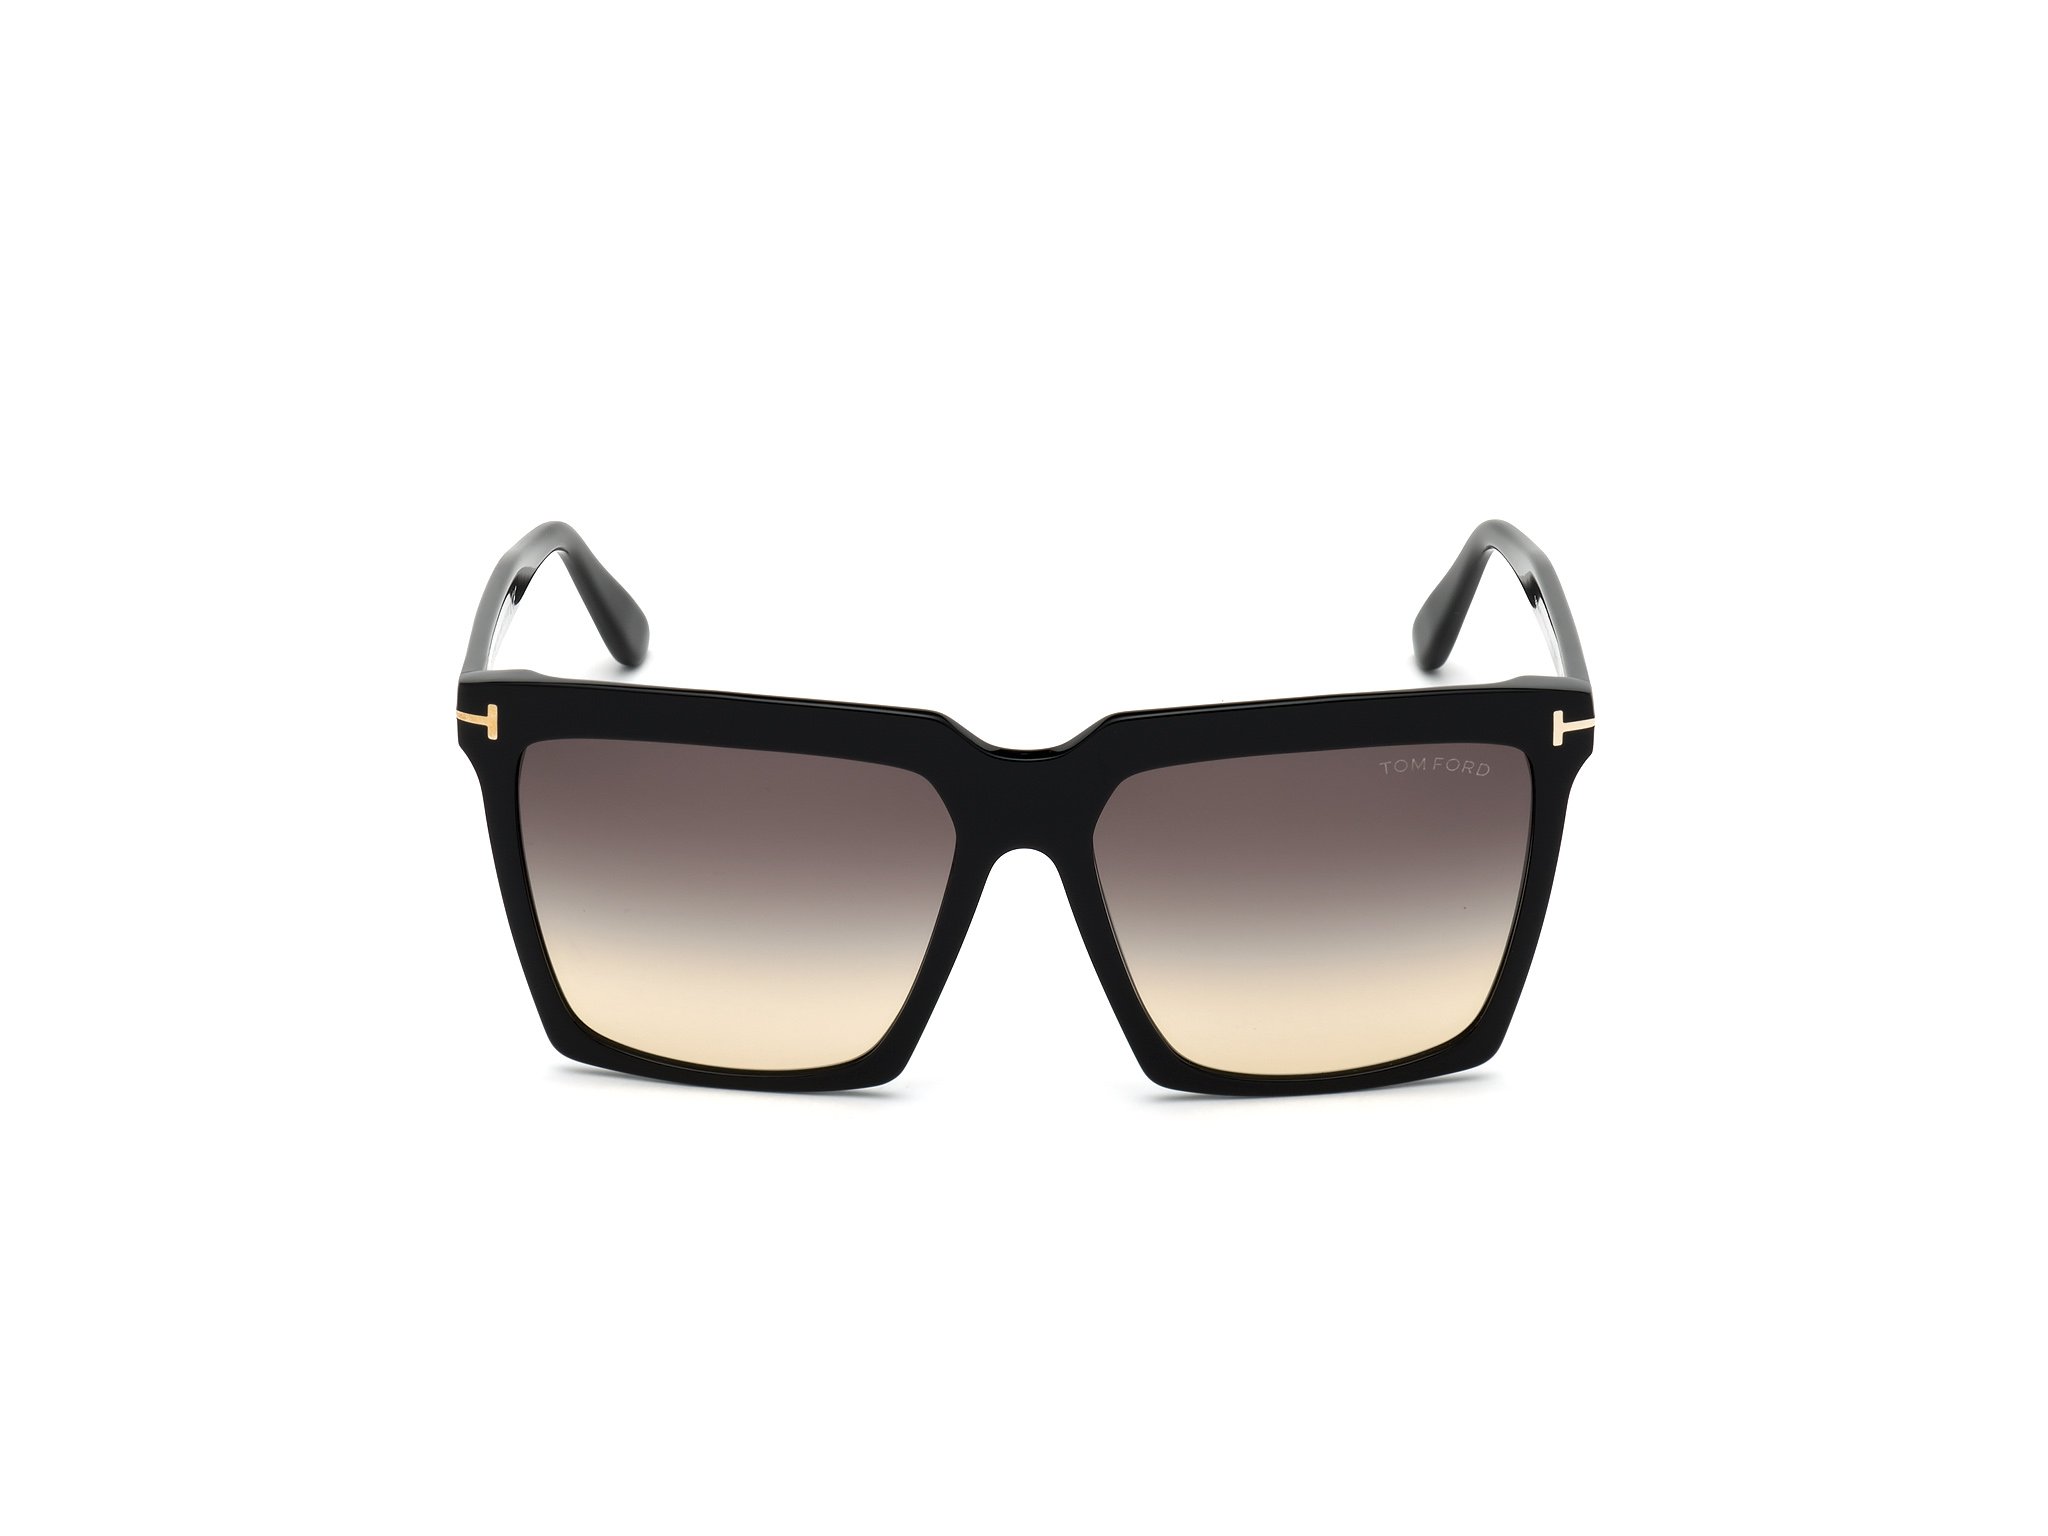 Das Bild zeigt die Sonnenbrille Sabrina FT0764 von der Marke Tom Ford in schwarz